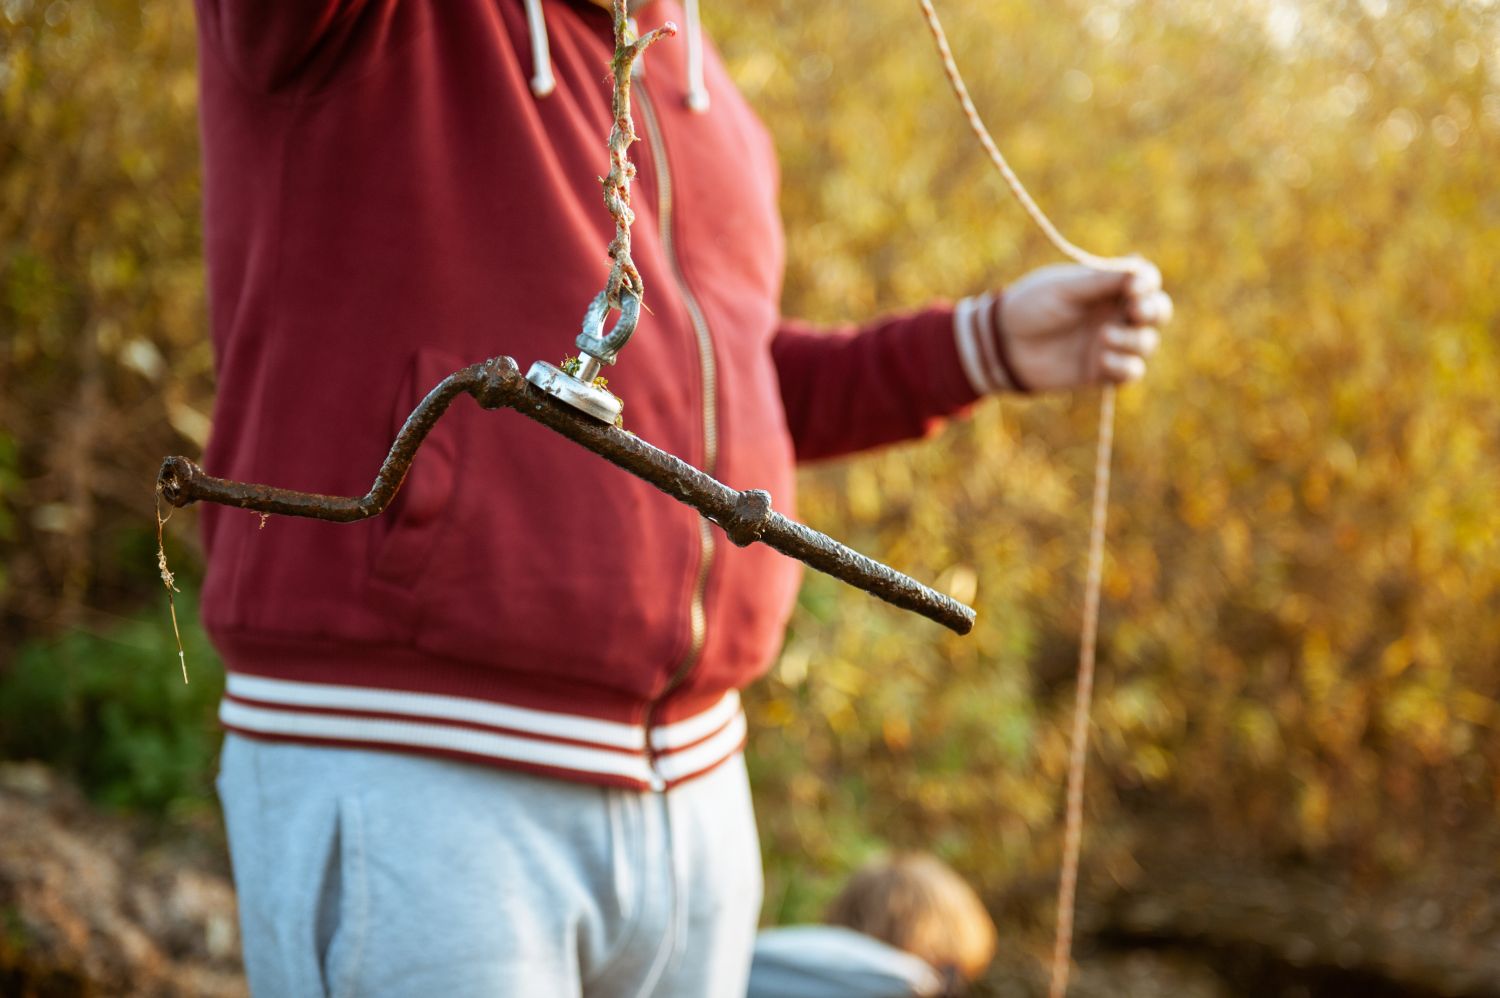 Interdiction de pratiquer la pêche à l'aimant en Moselle